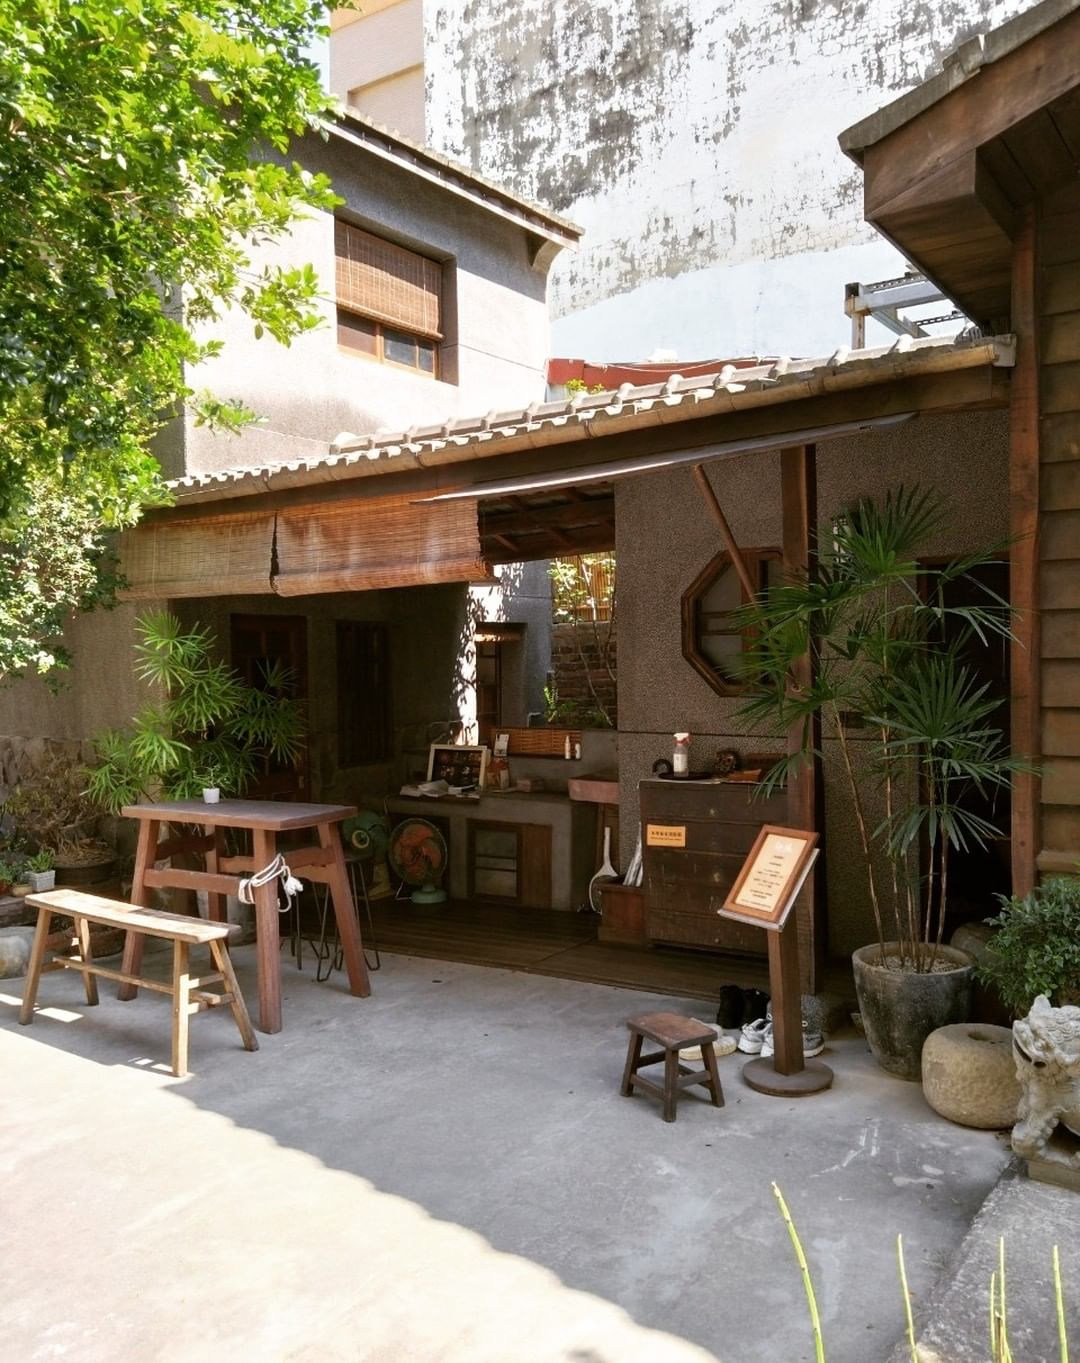 【台南カフェ散策#8】和風の庭園カフェ「錫鼓Tin Drum」は心地良い畳席とレトロな装飾があります。静かな空間でコーヒーやお茶を...